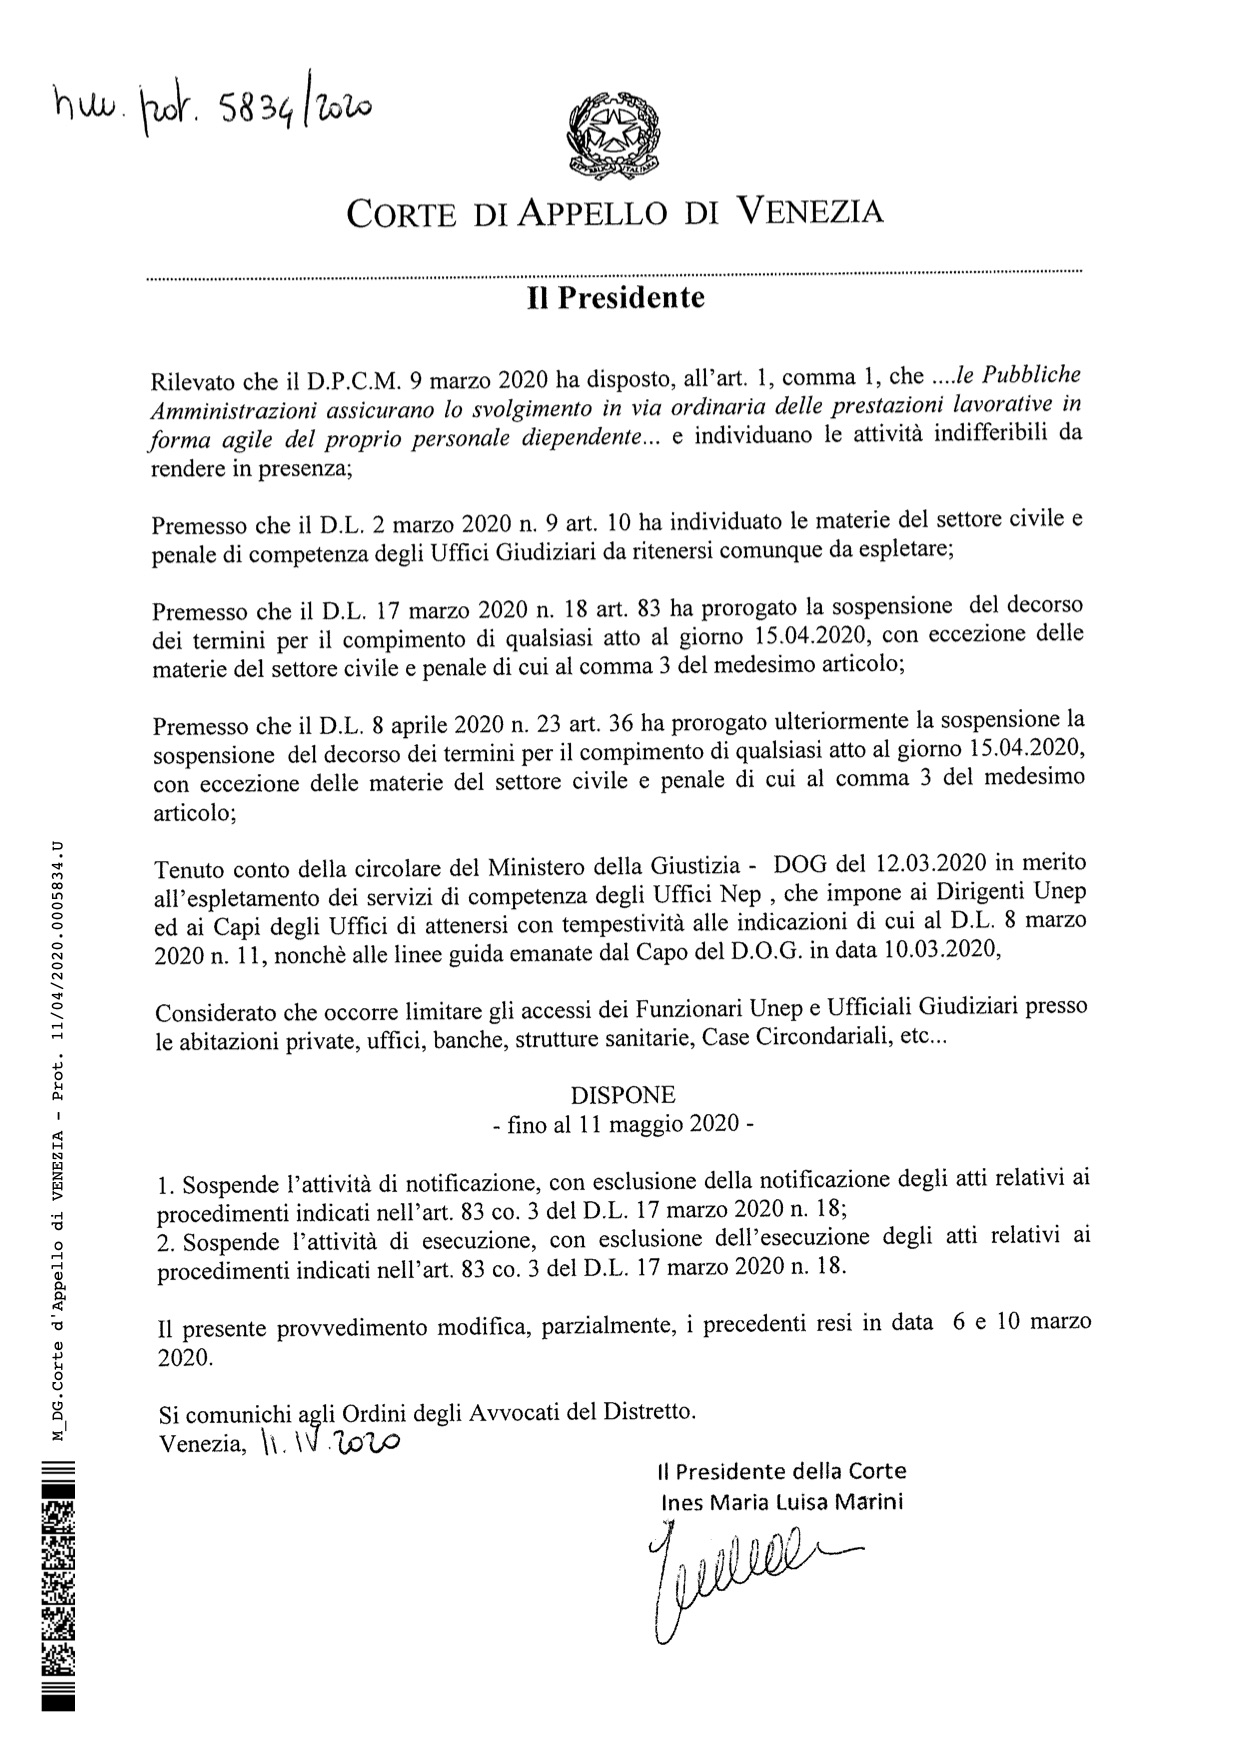 Provvedimento Presidente Corte d'Appello 11.04.2020 - Misure organizzative UNEP